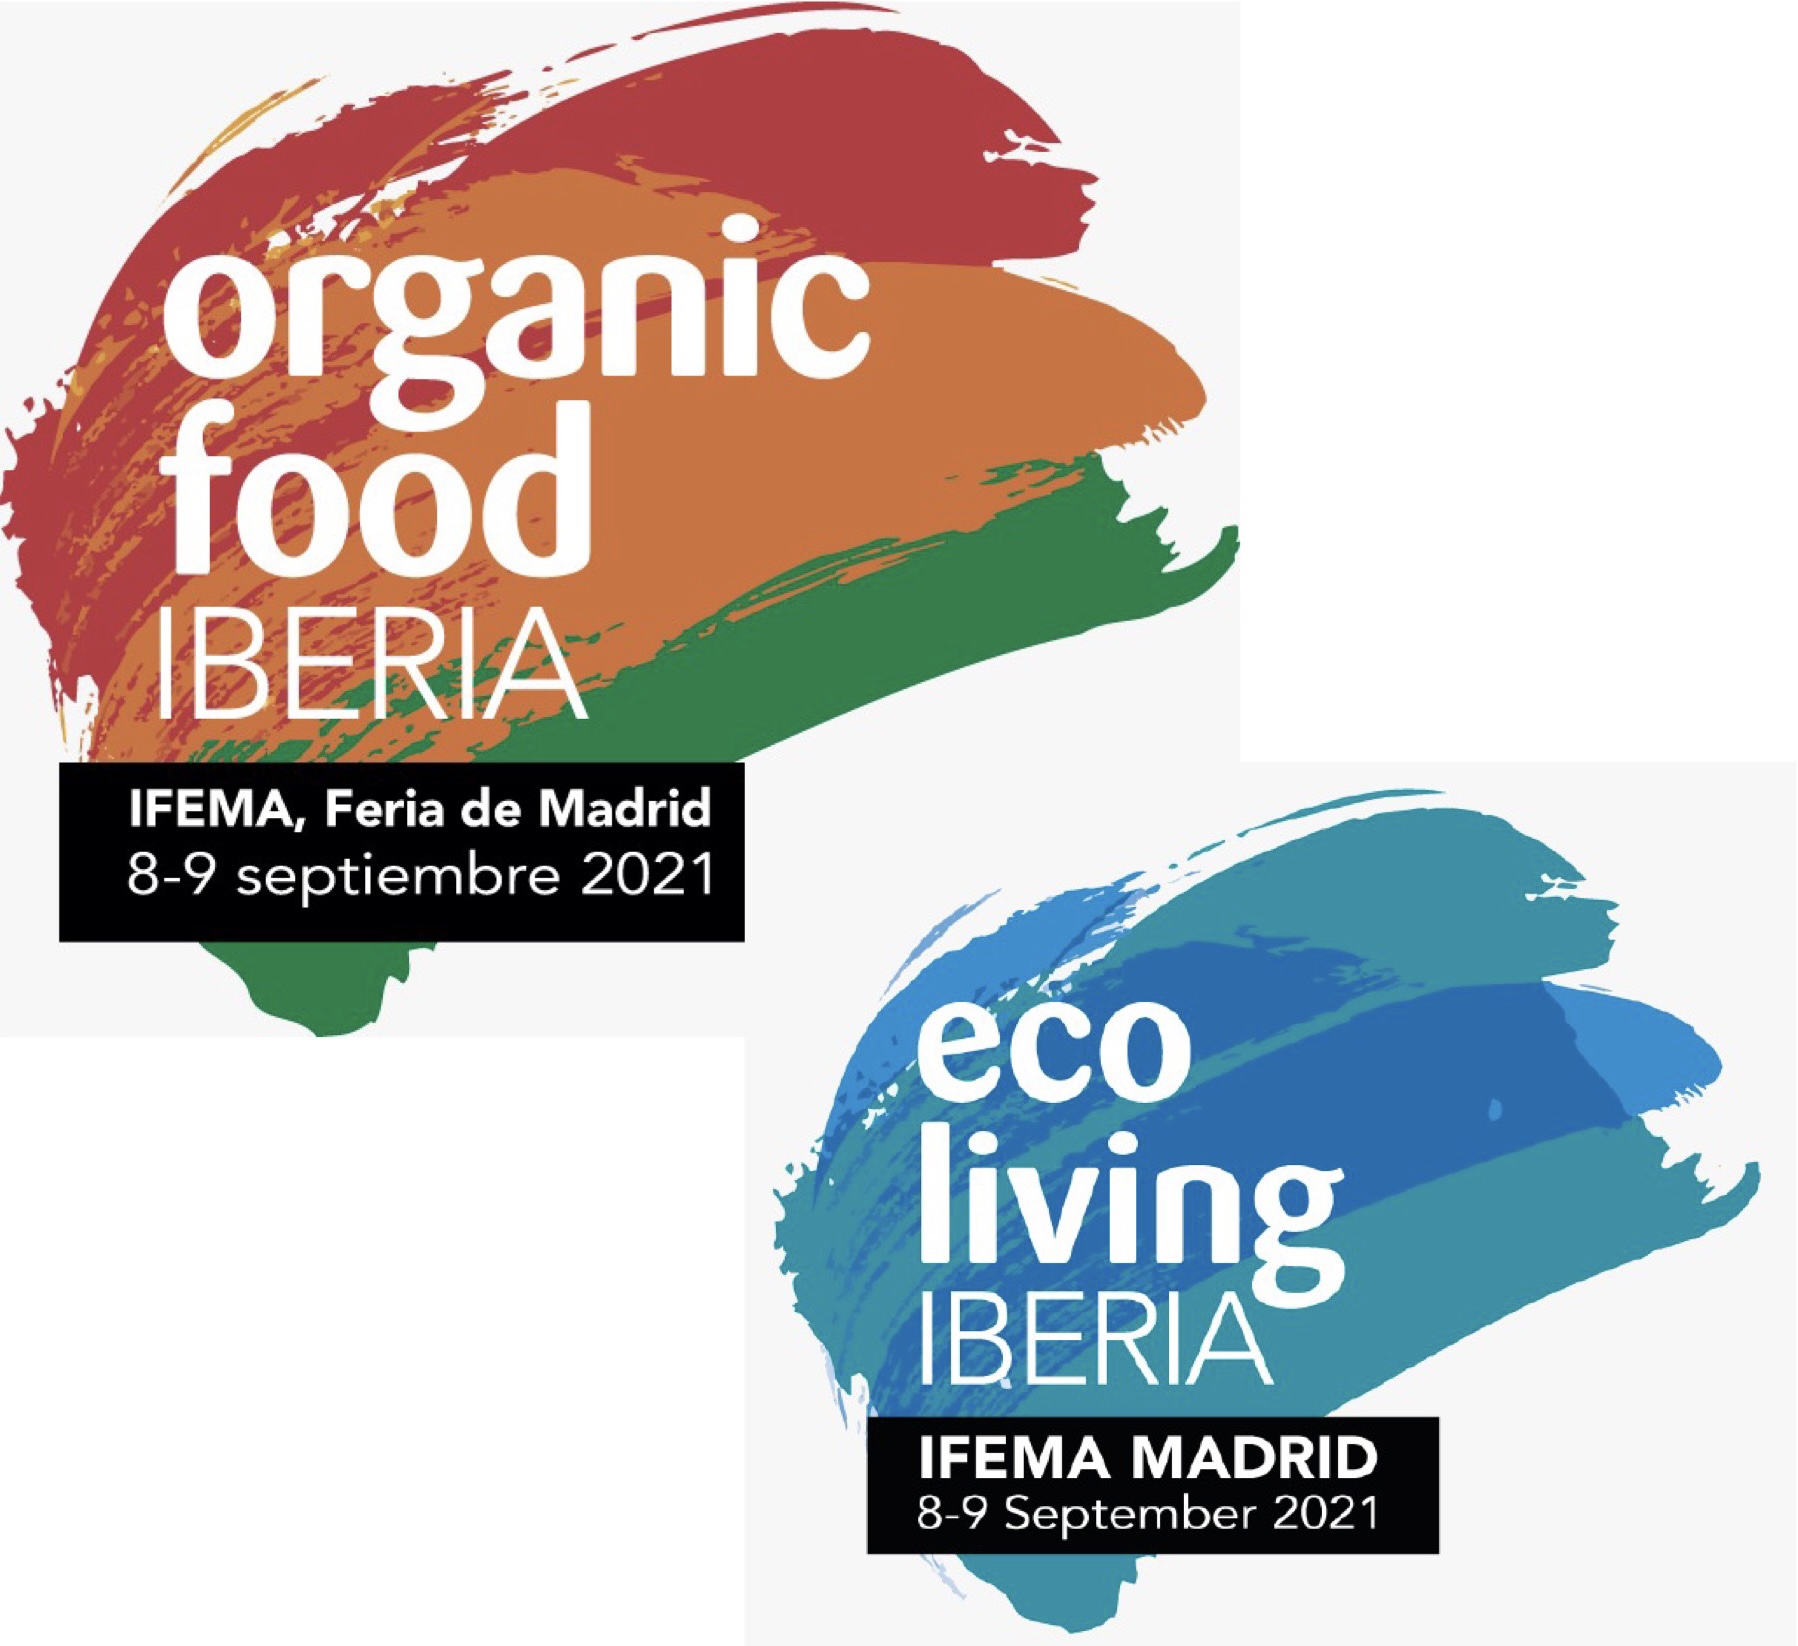 Organic Food Iberia and Eco Living Iberia logos